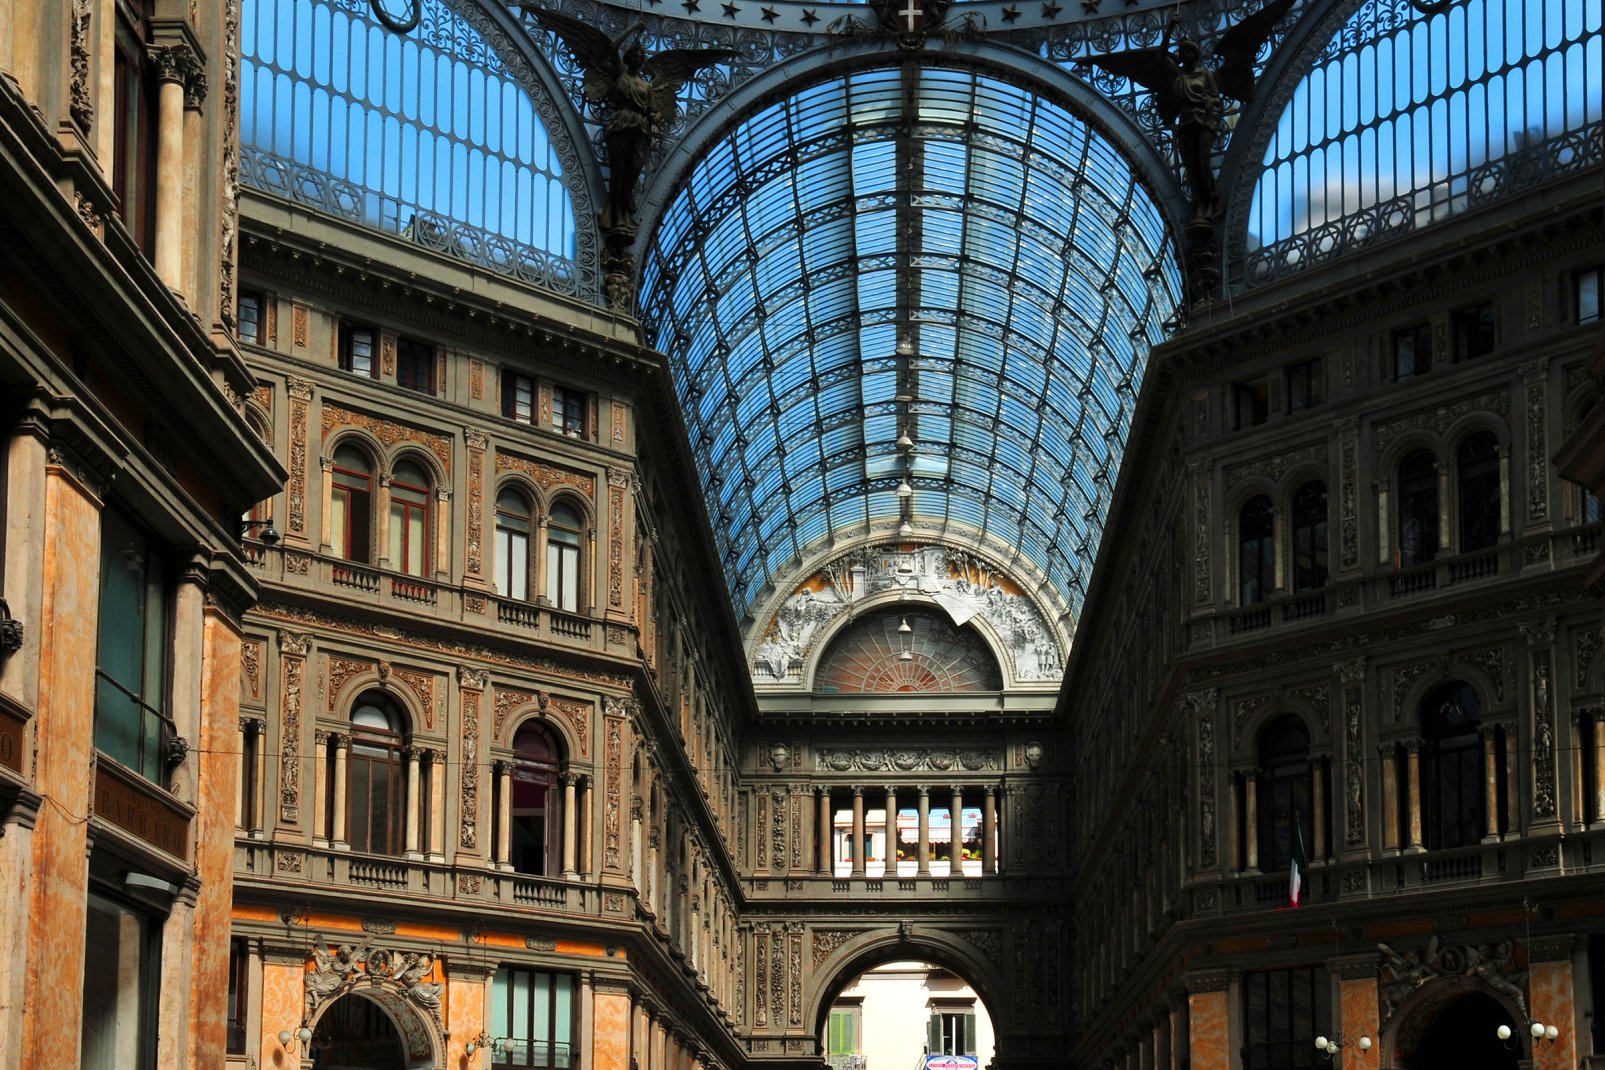 Le dôme de la Galerie Umberto I s'élève à 56,7 mètres et il est posé sur un octogone de 36,2 mètres.